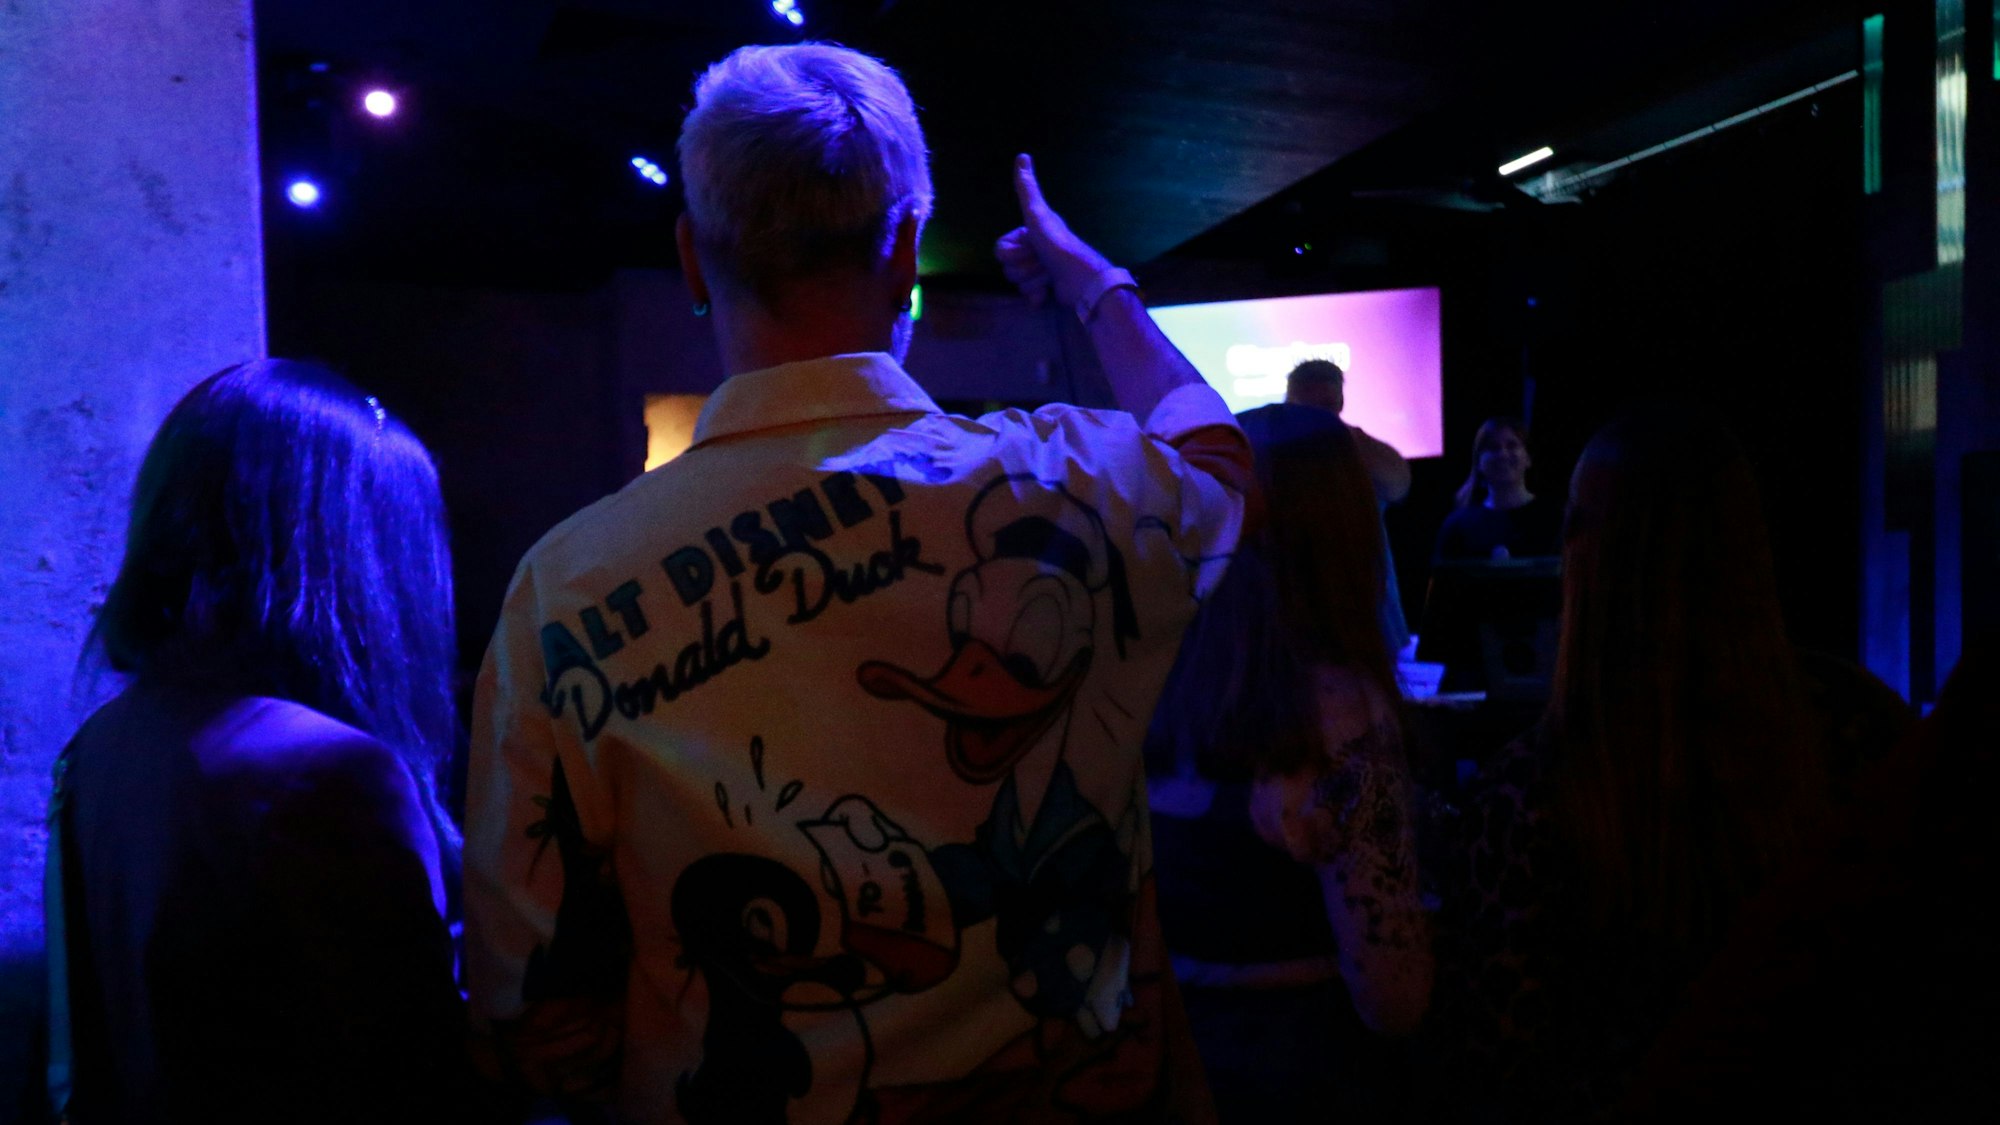 Zwei Personen stehen in einer Menge. Ein Mann trägt ein Hemd mit Disney-Motiv.